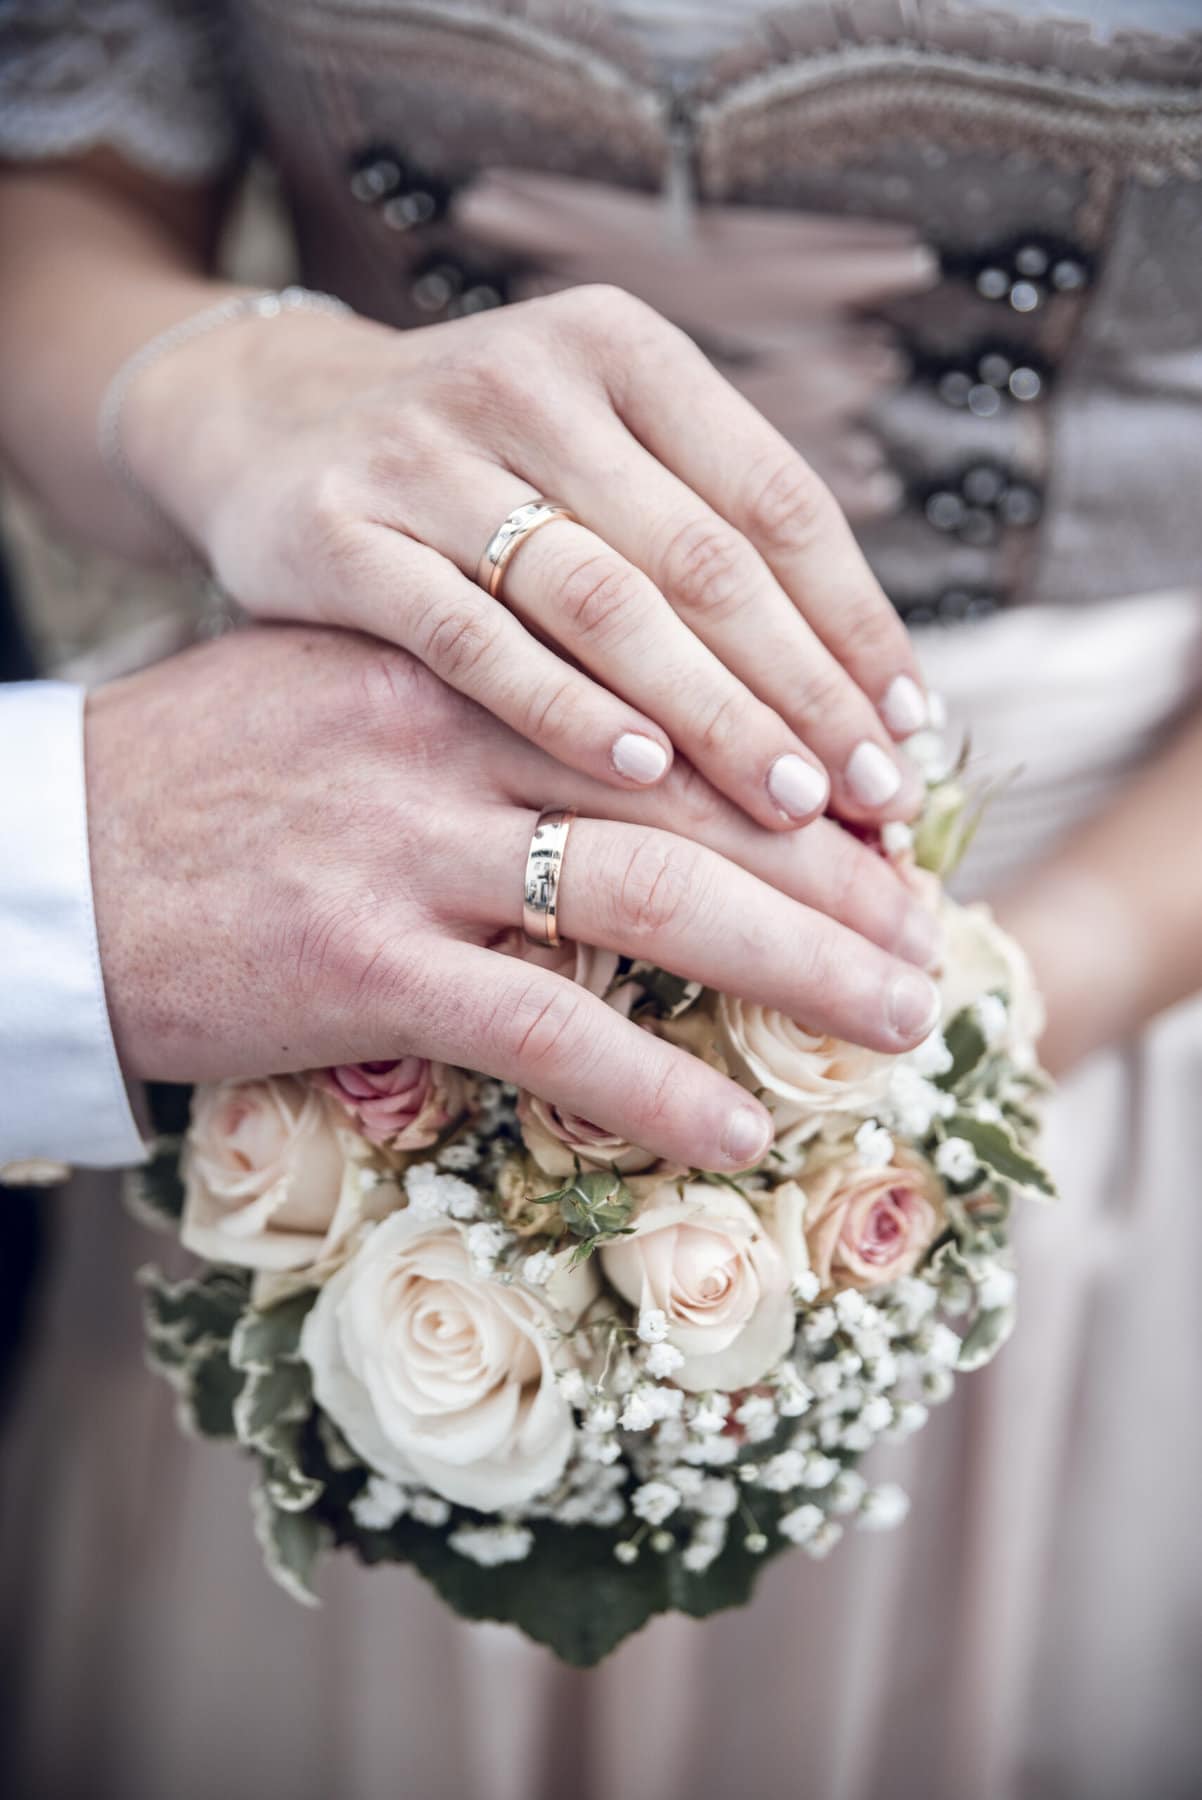 Die Hände des Brautpaars mit Ringen auf dem Braustrauß vor dem Dirndl der Braut.